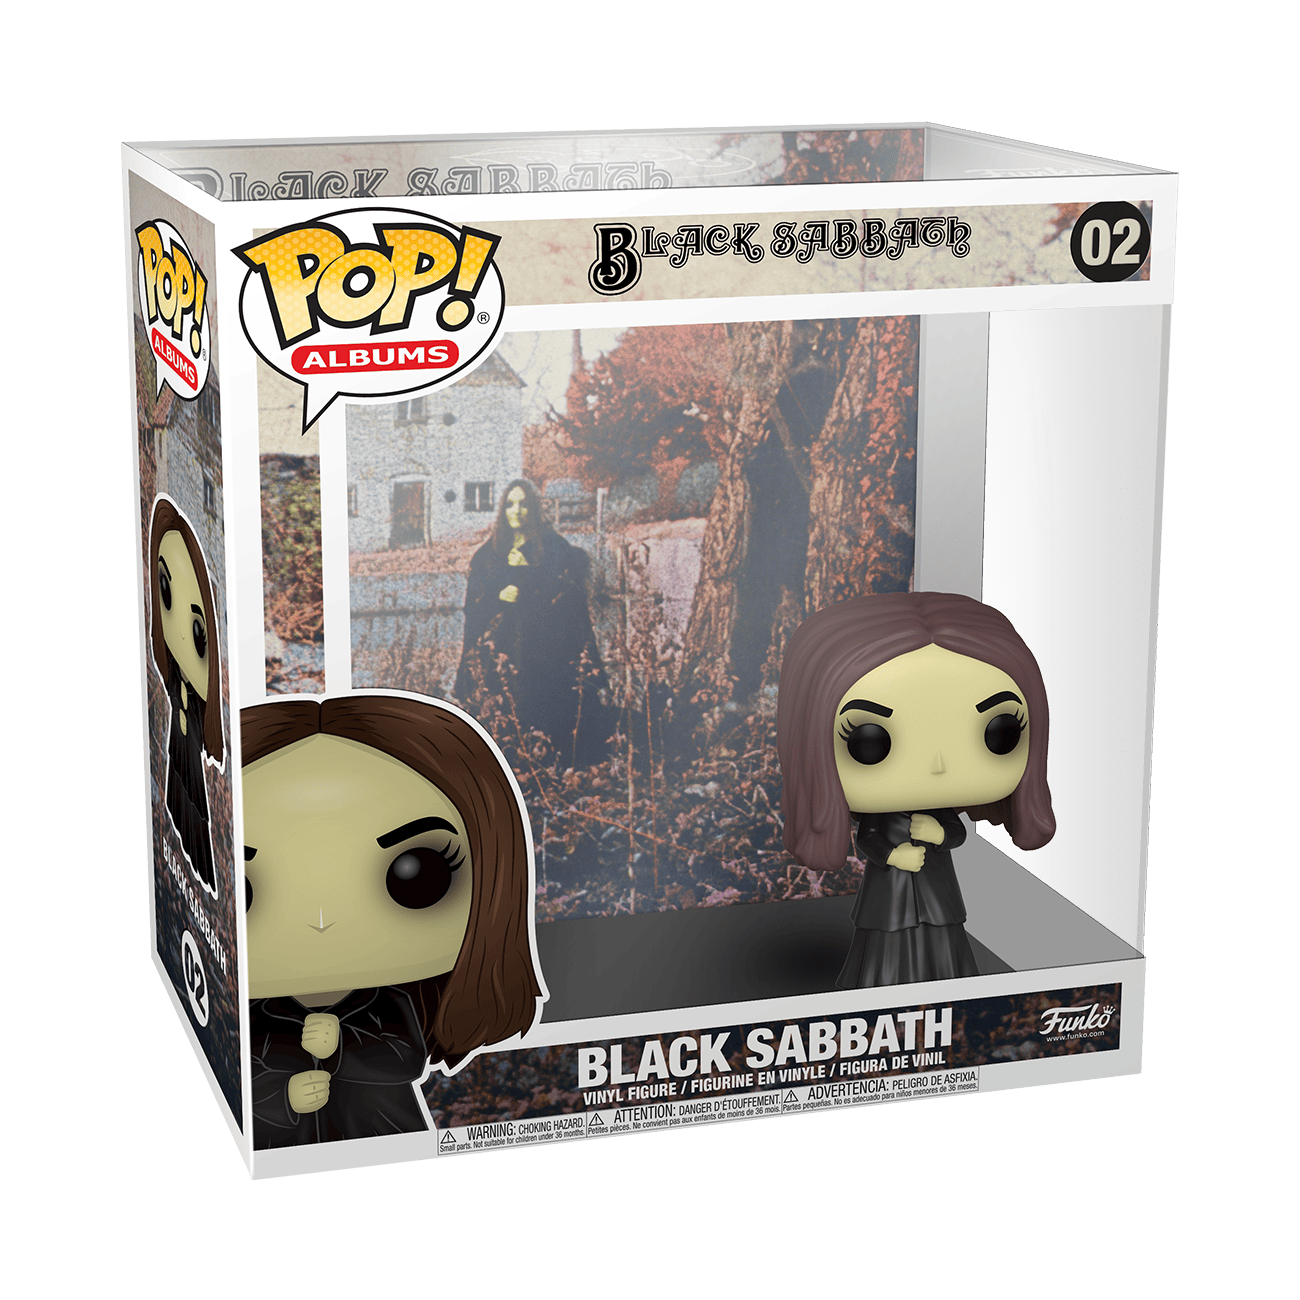 Buy Pop! Albums Black Sabbath at Funko.